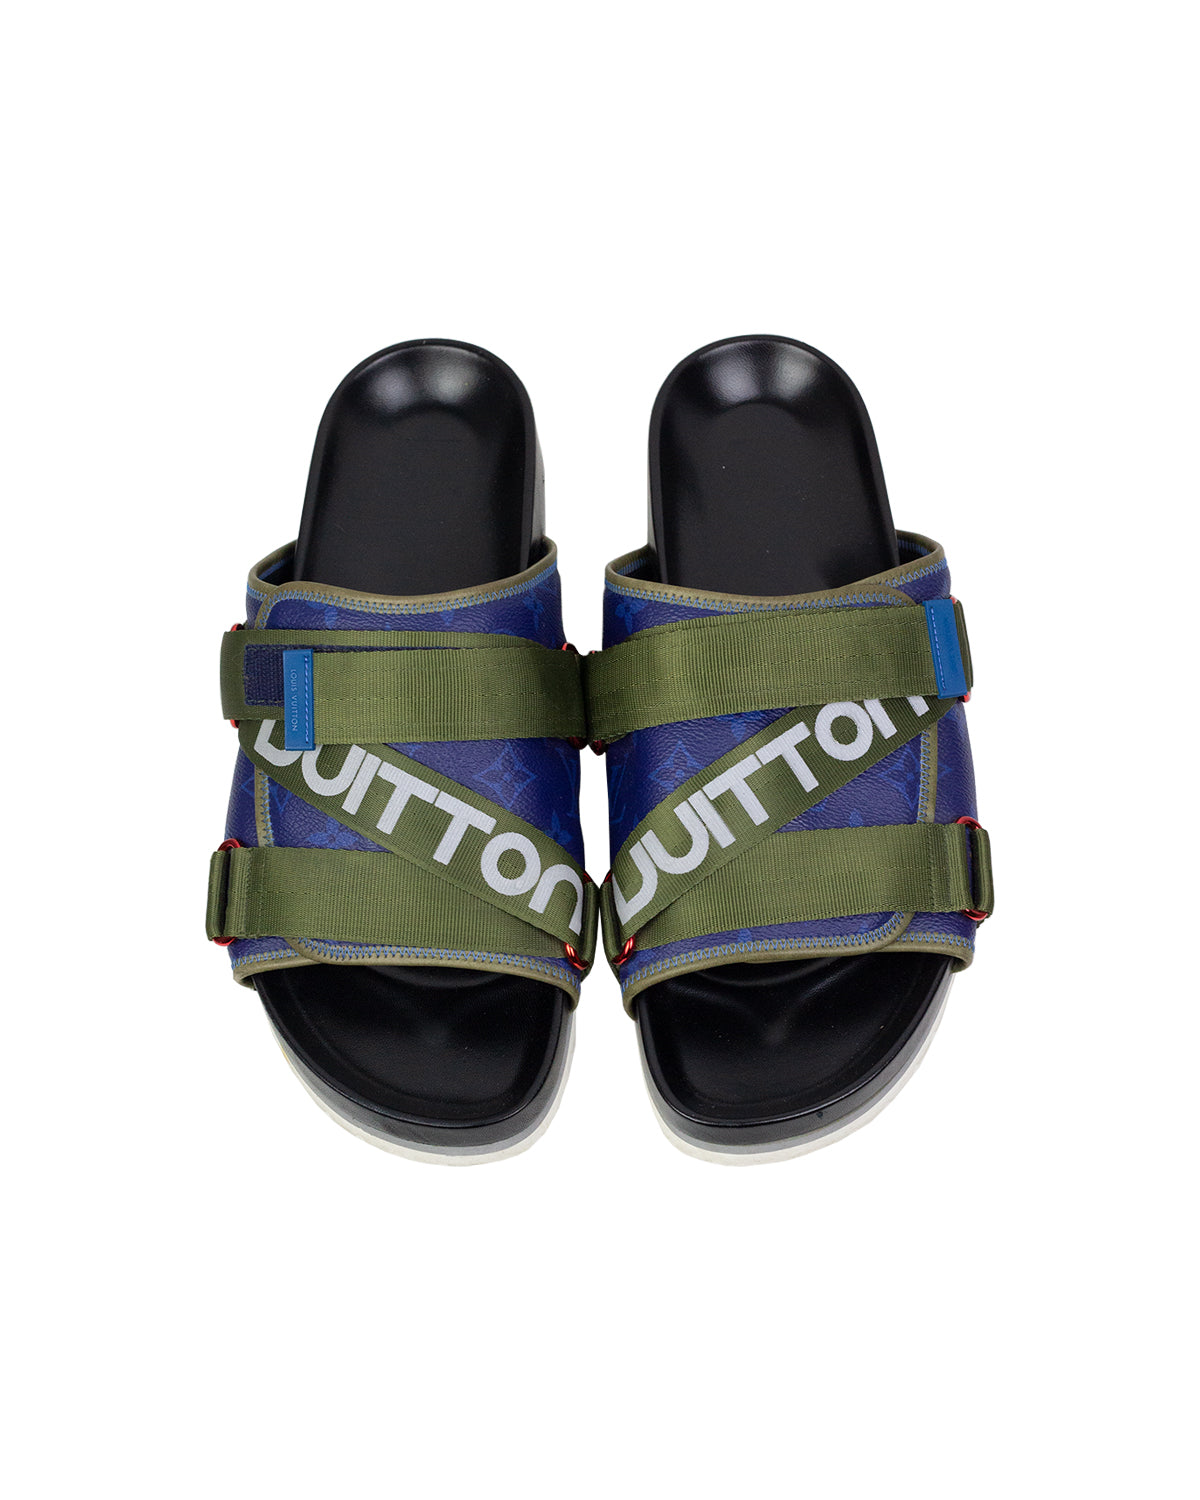 Louis Vuitton Men's Authenticated Sandal